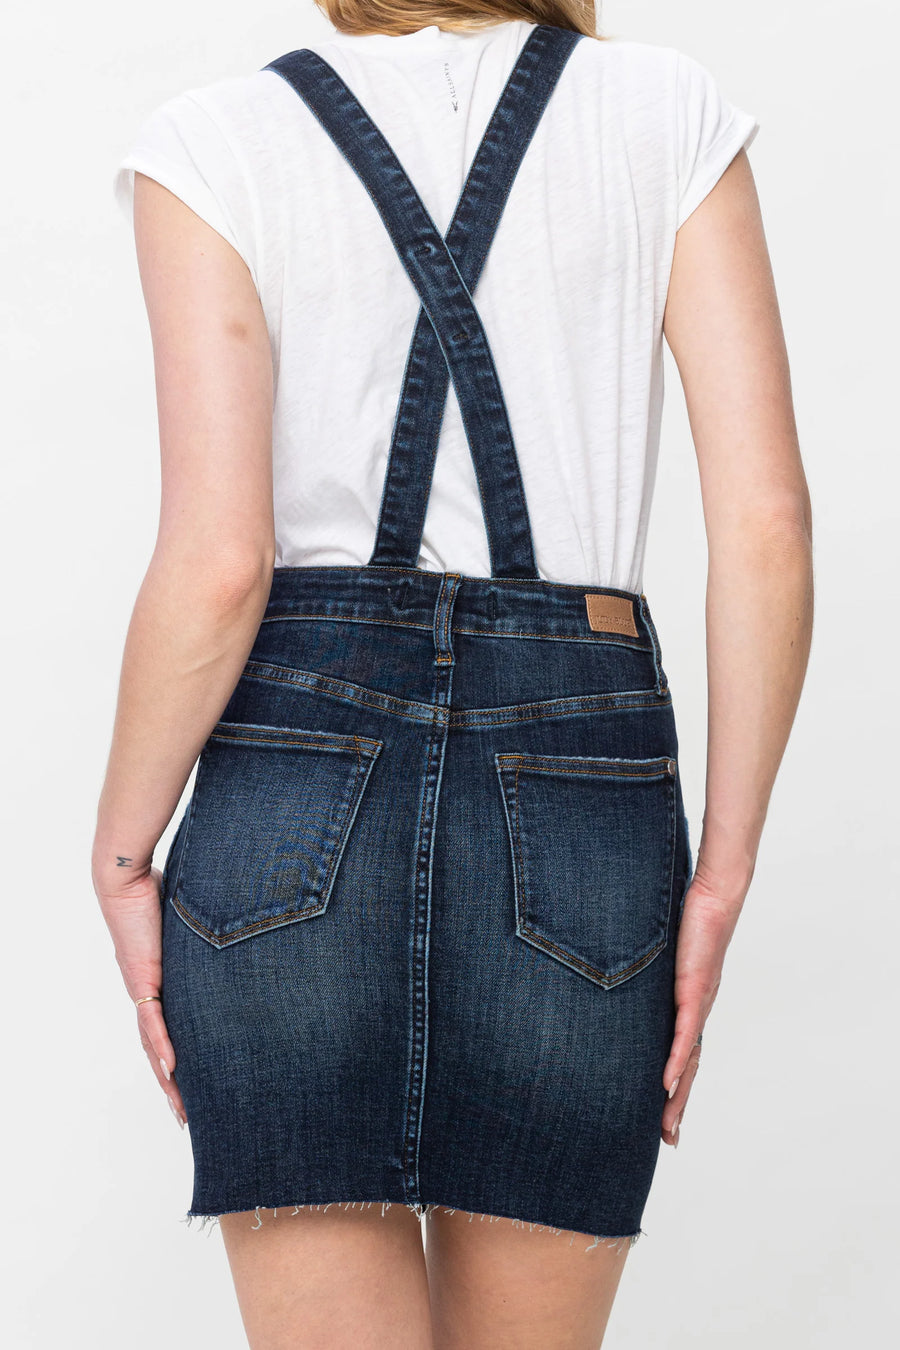 Nia | HIgh Waist Denim Overall Skirt (Judy Blue Style 2810)